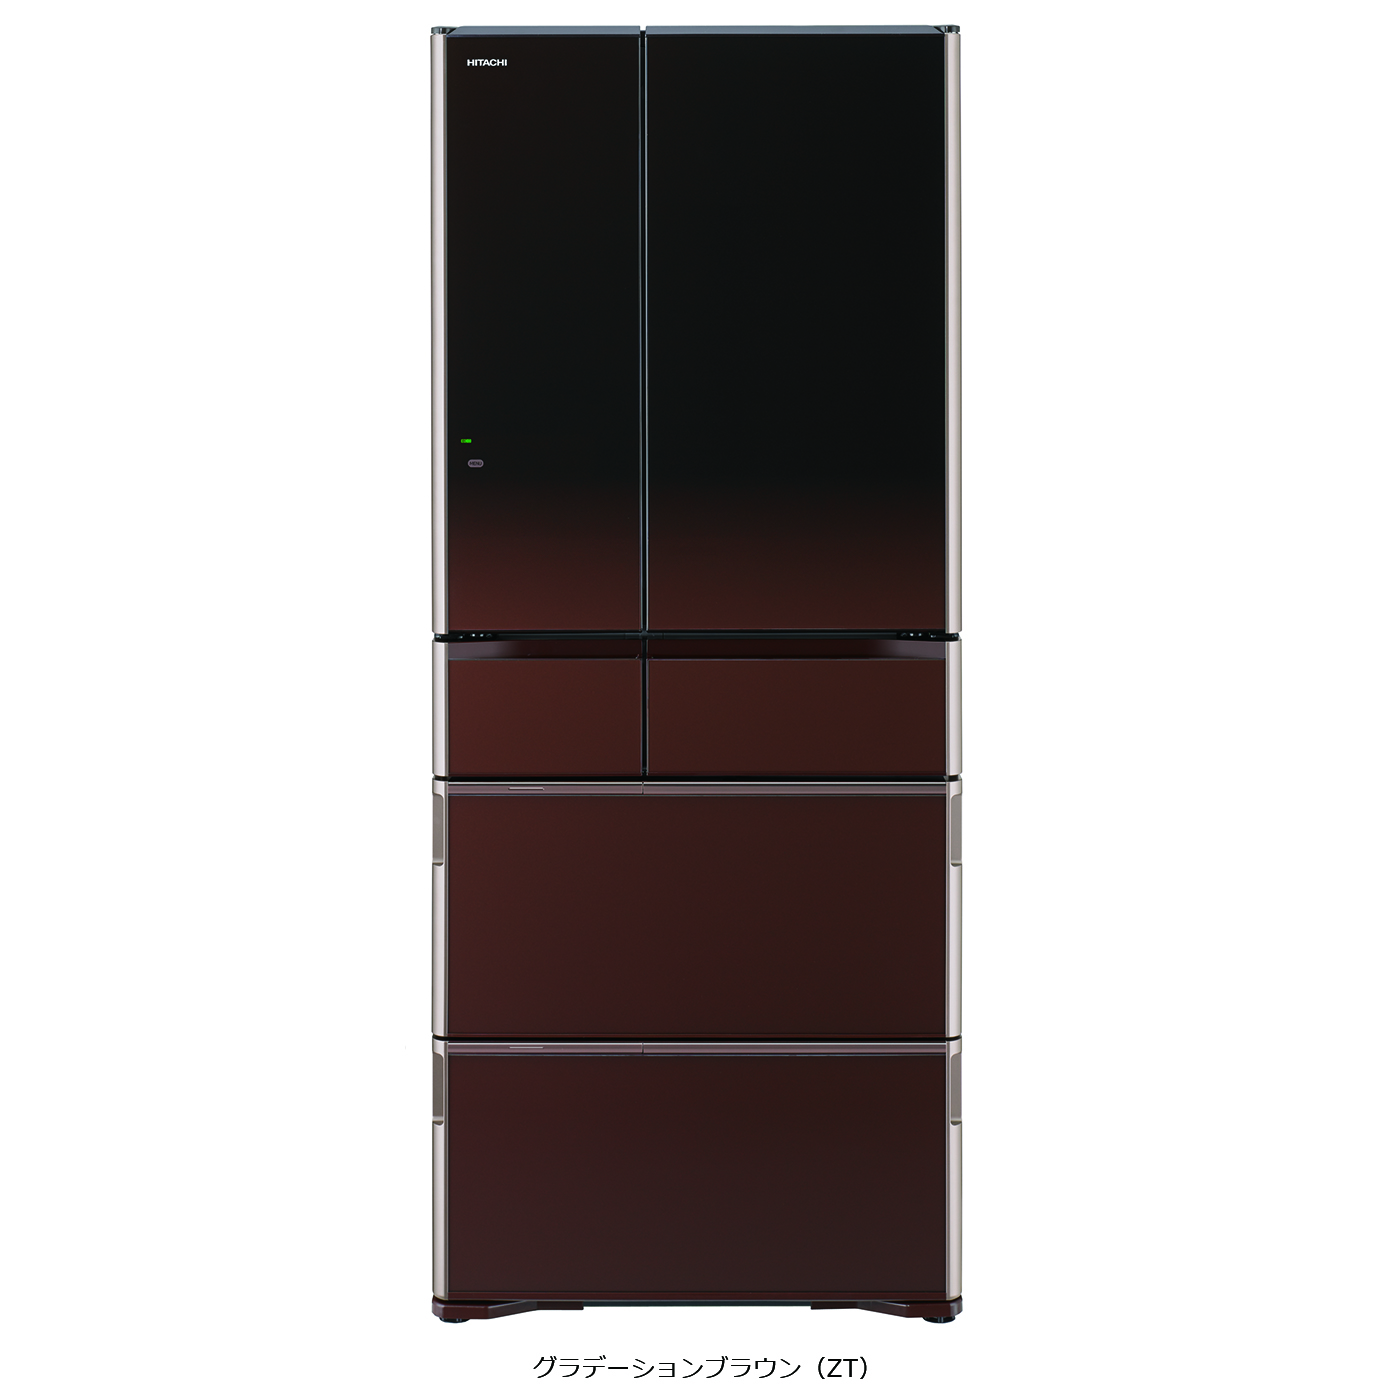 真空チルド ラグジュアリーWXシリーズ ： 冷蔵庫 ： 日立の家電品